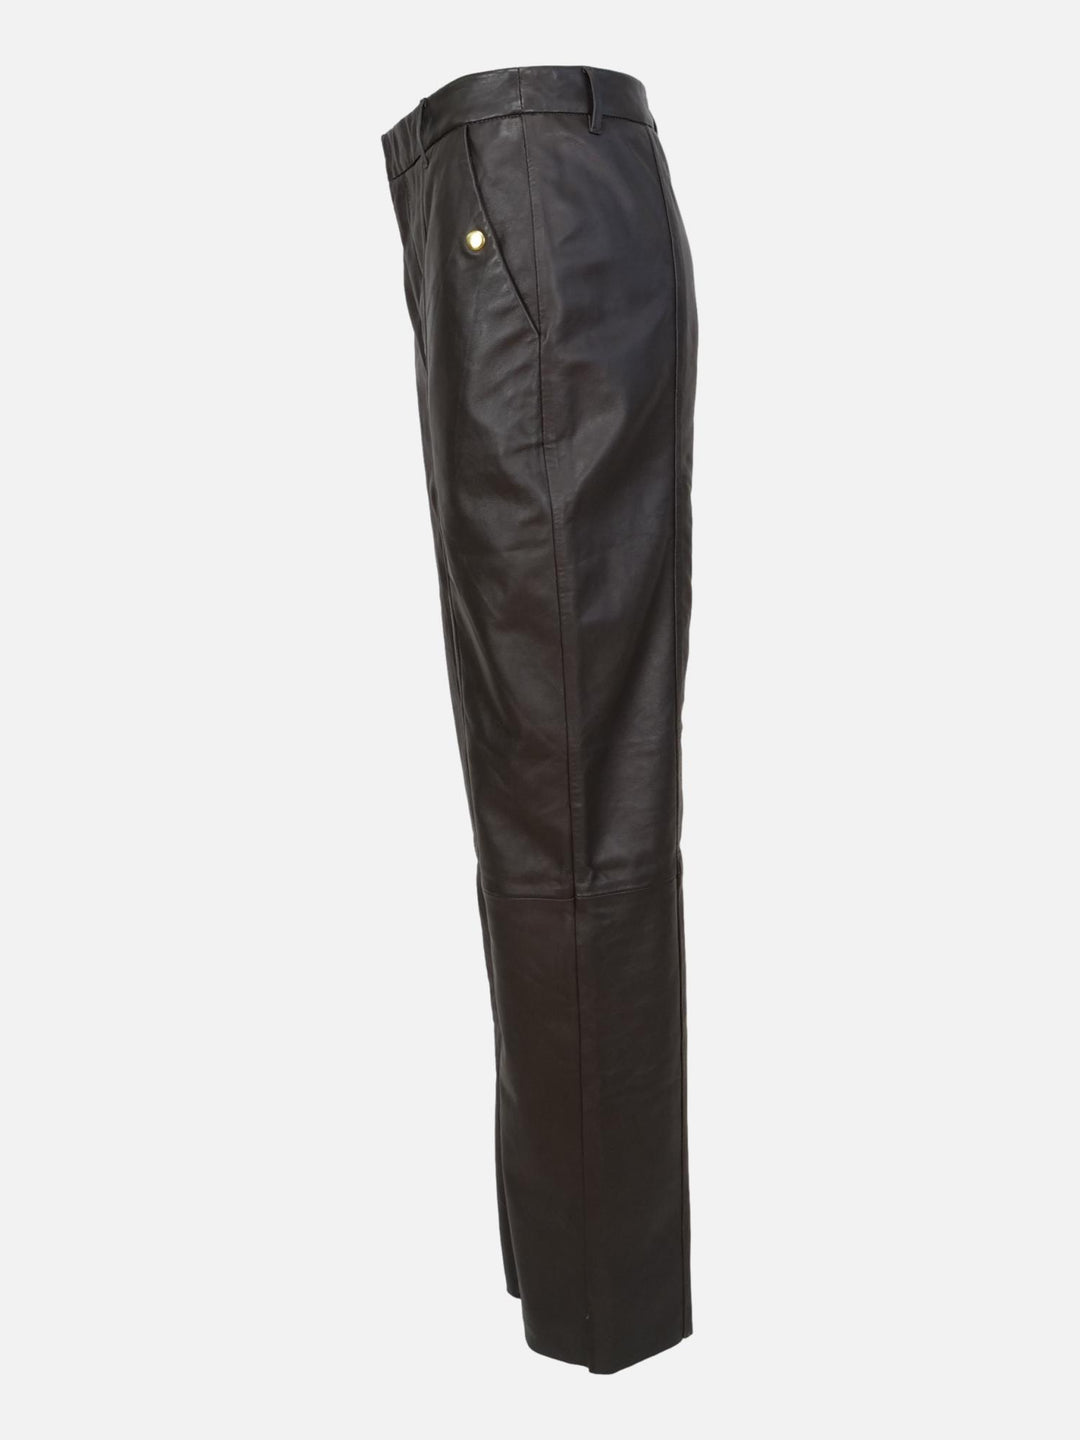 New Puk Trousers - Lamb Nappa Leather - Women - Warm Grey